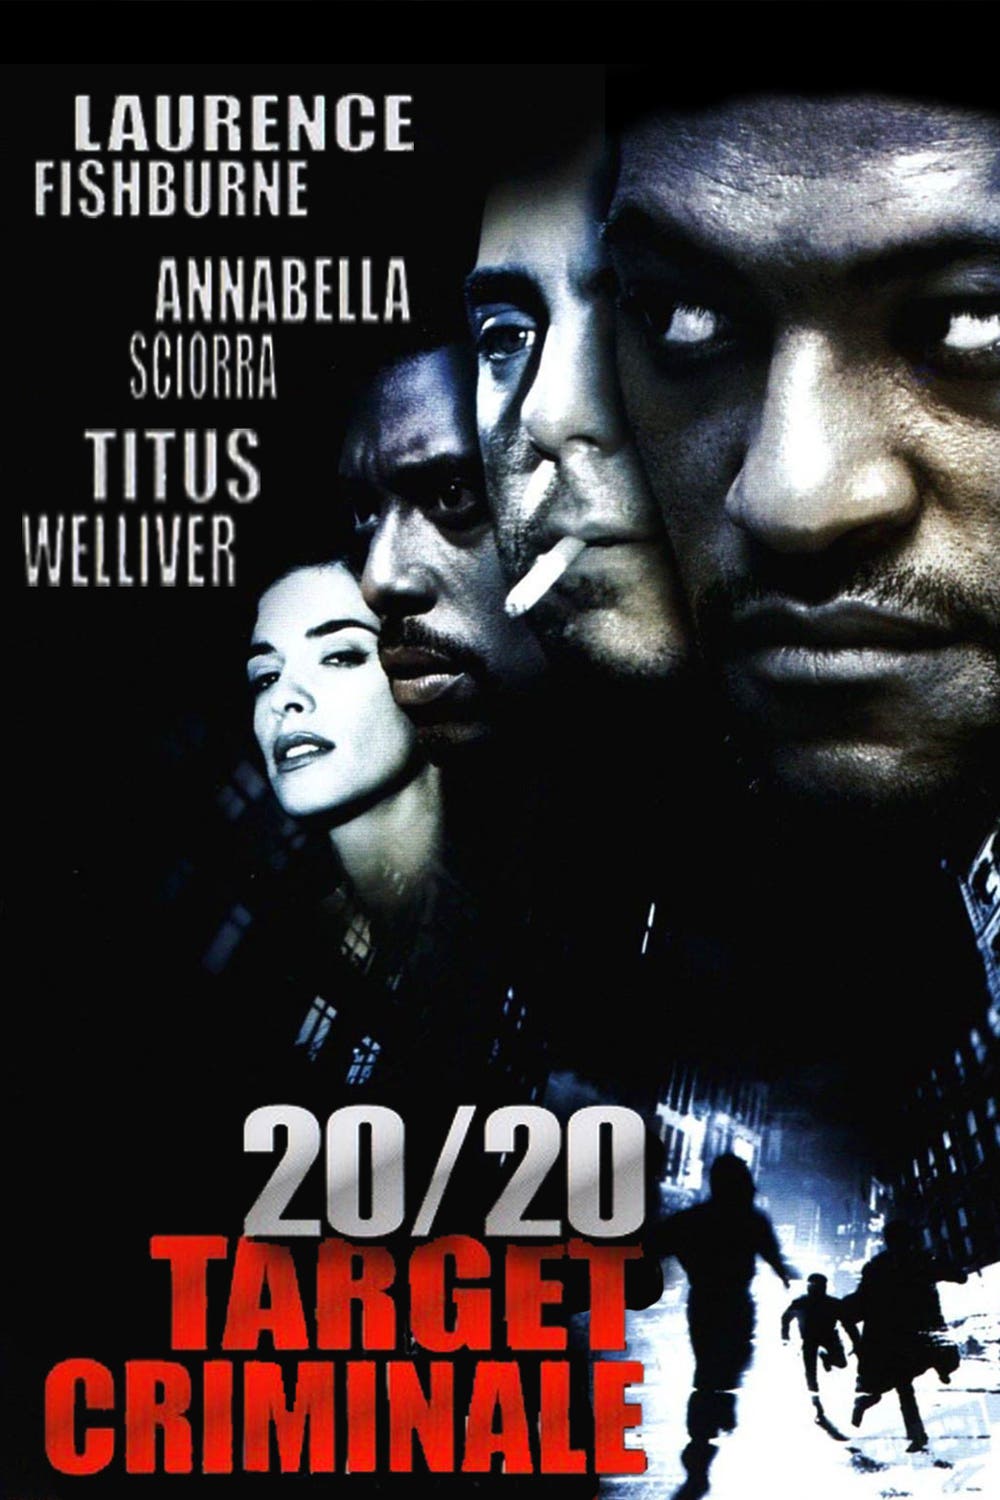 20/20 – Target Criminale (2000)